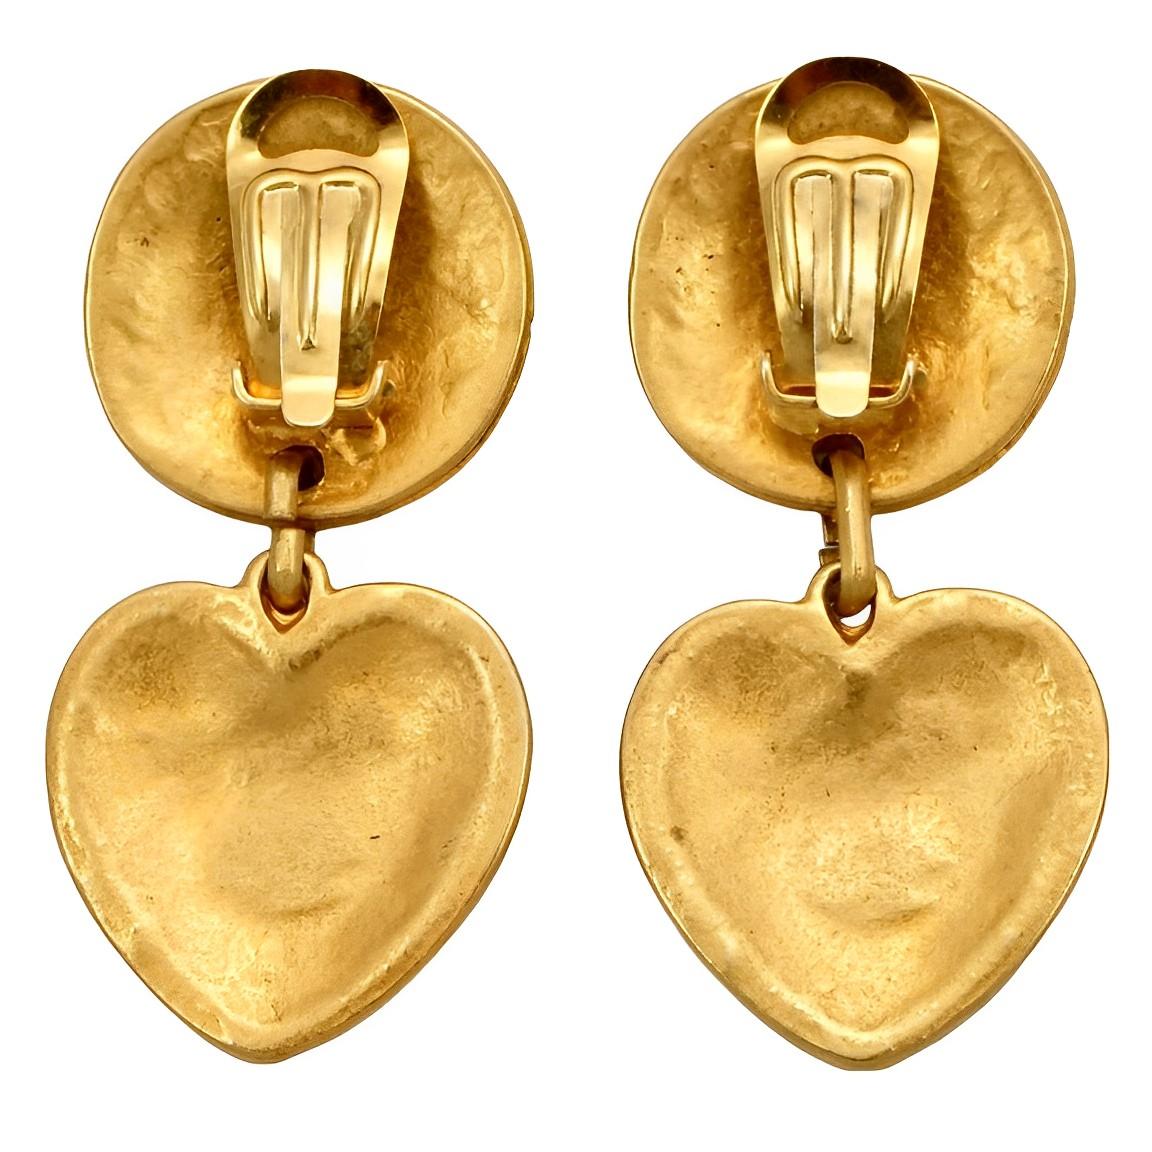 Wunderschöne mattvergoldete Herz-Clip-Ohrringe im byzantinischen Design. Die Ohrringe sind Italien gestempelt. Sie sind im Stil des französischen Designers Edouard Rambaud gehalten.

Messen Länge 5,6 cm / 2,2 Zoll durch Breite ungefähr  2,5 cm / 1